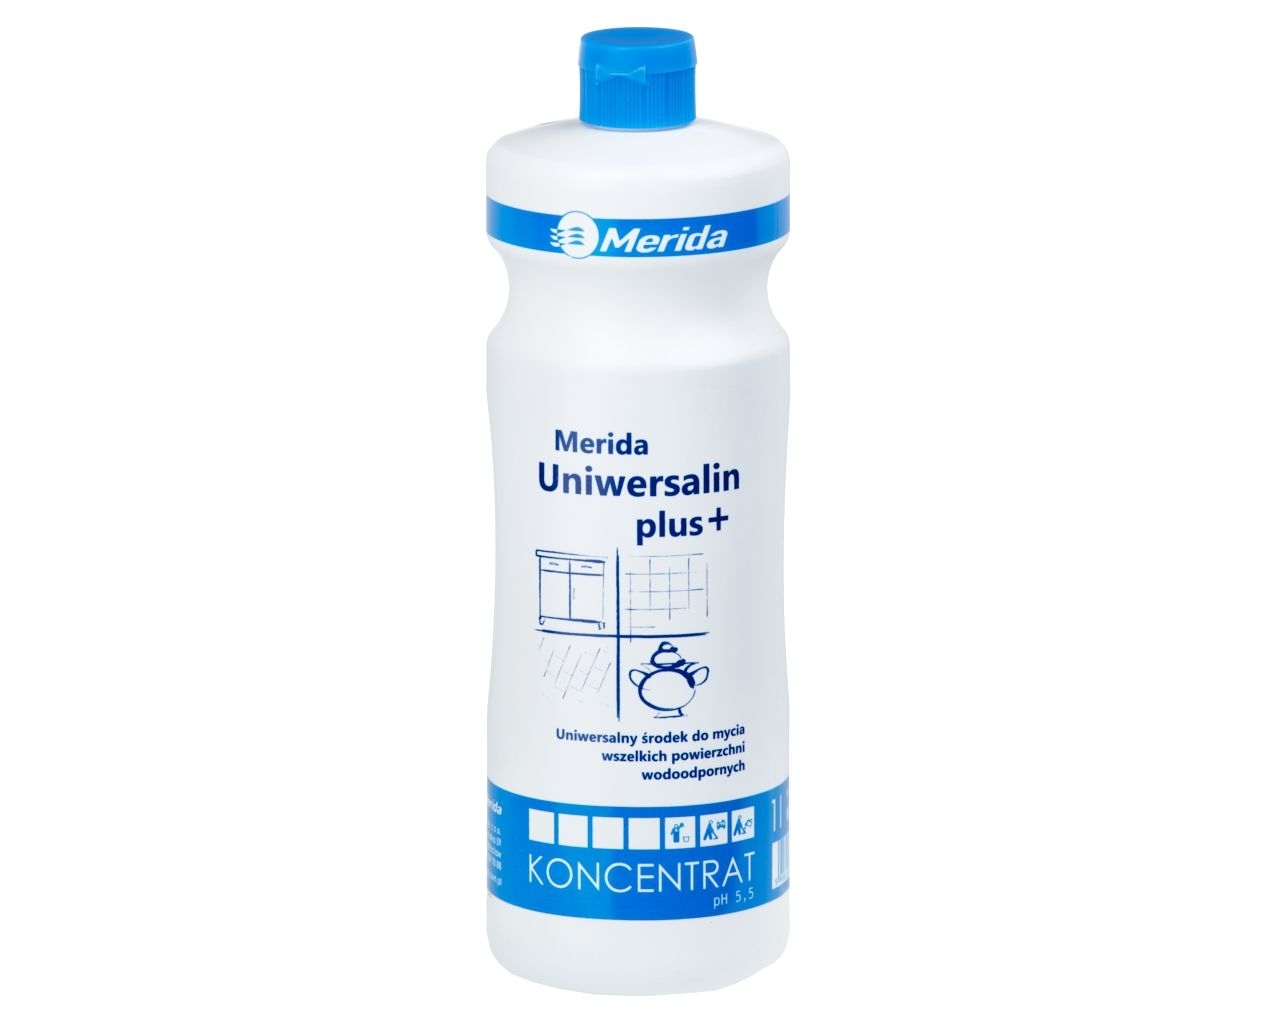 MERIDA UNIWERSALIN PLUS+ Uniwersalny środek do mycia powierzchni wodoodpornych, butelka 1 l